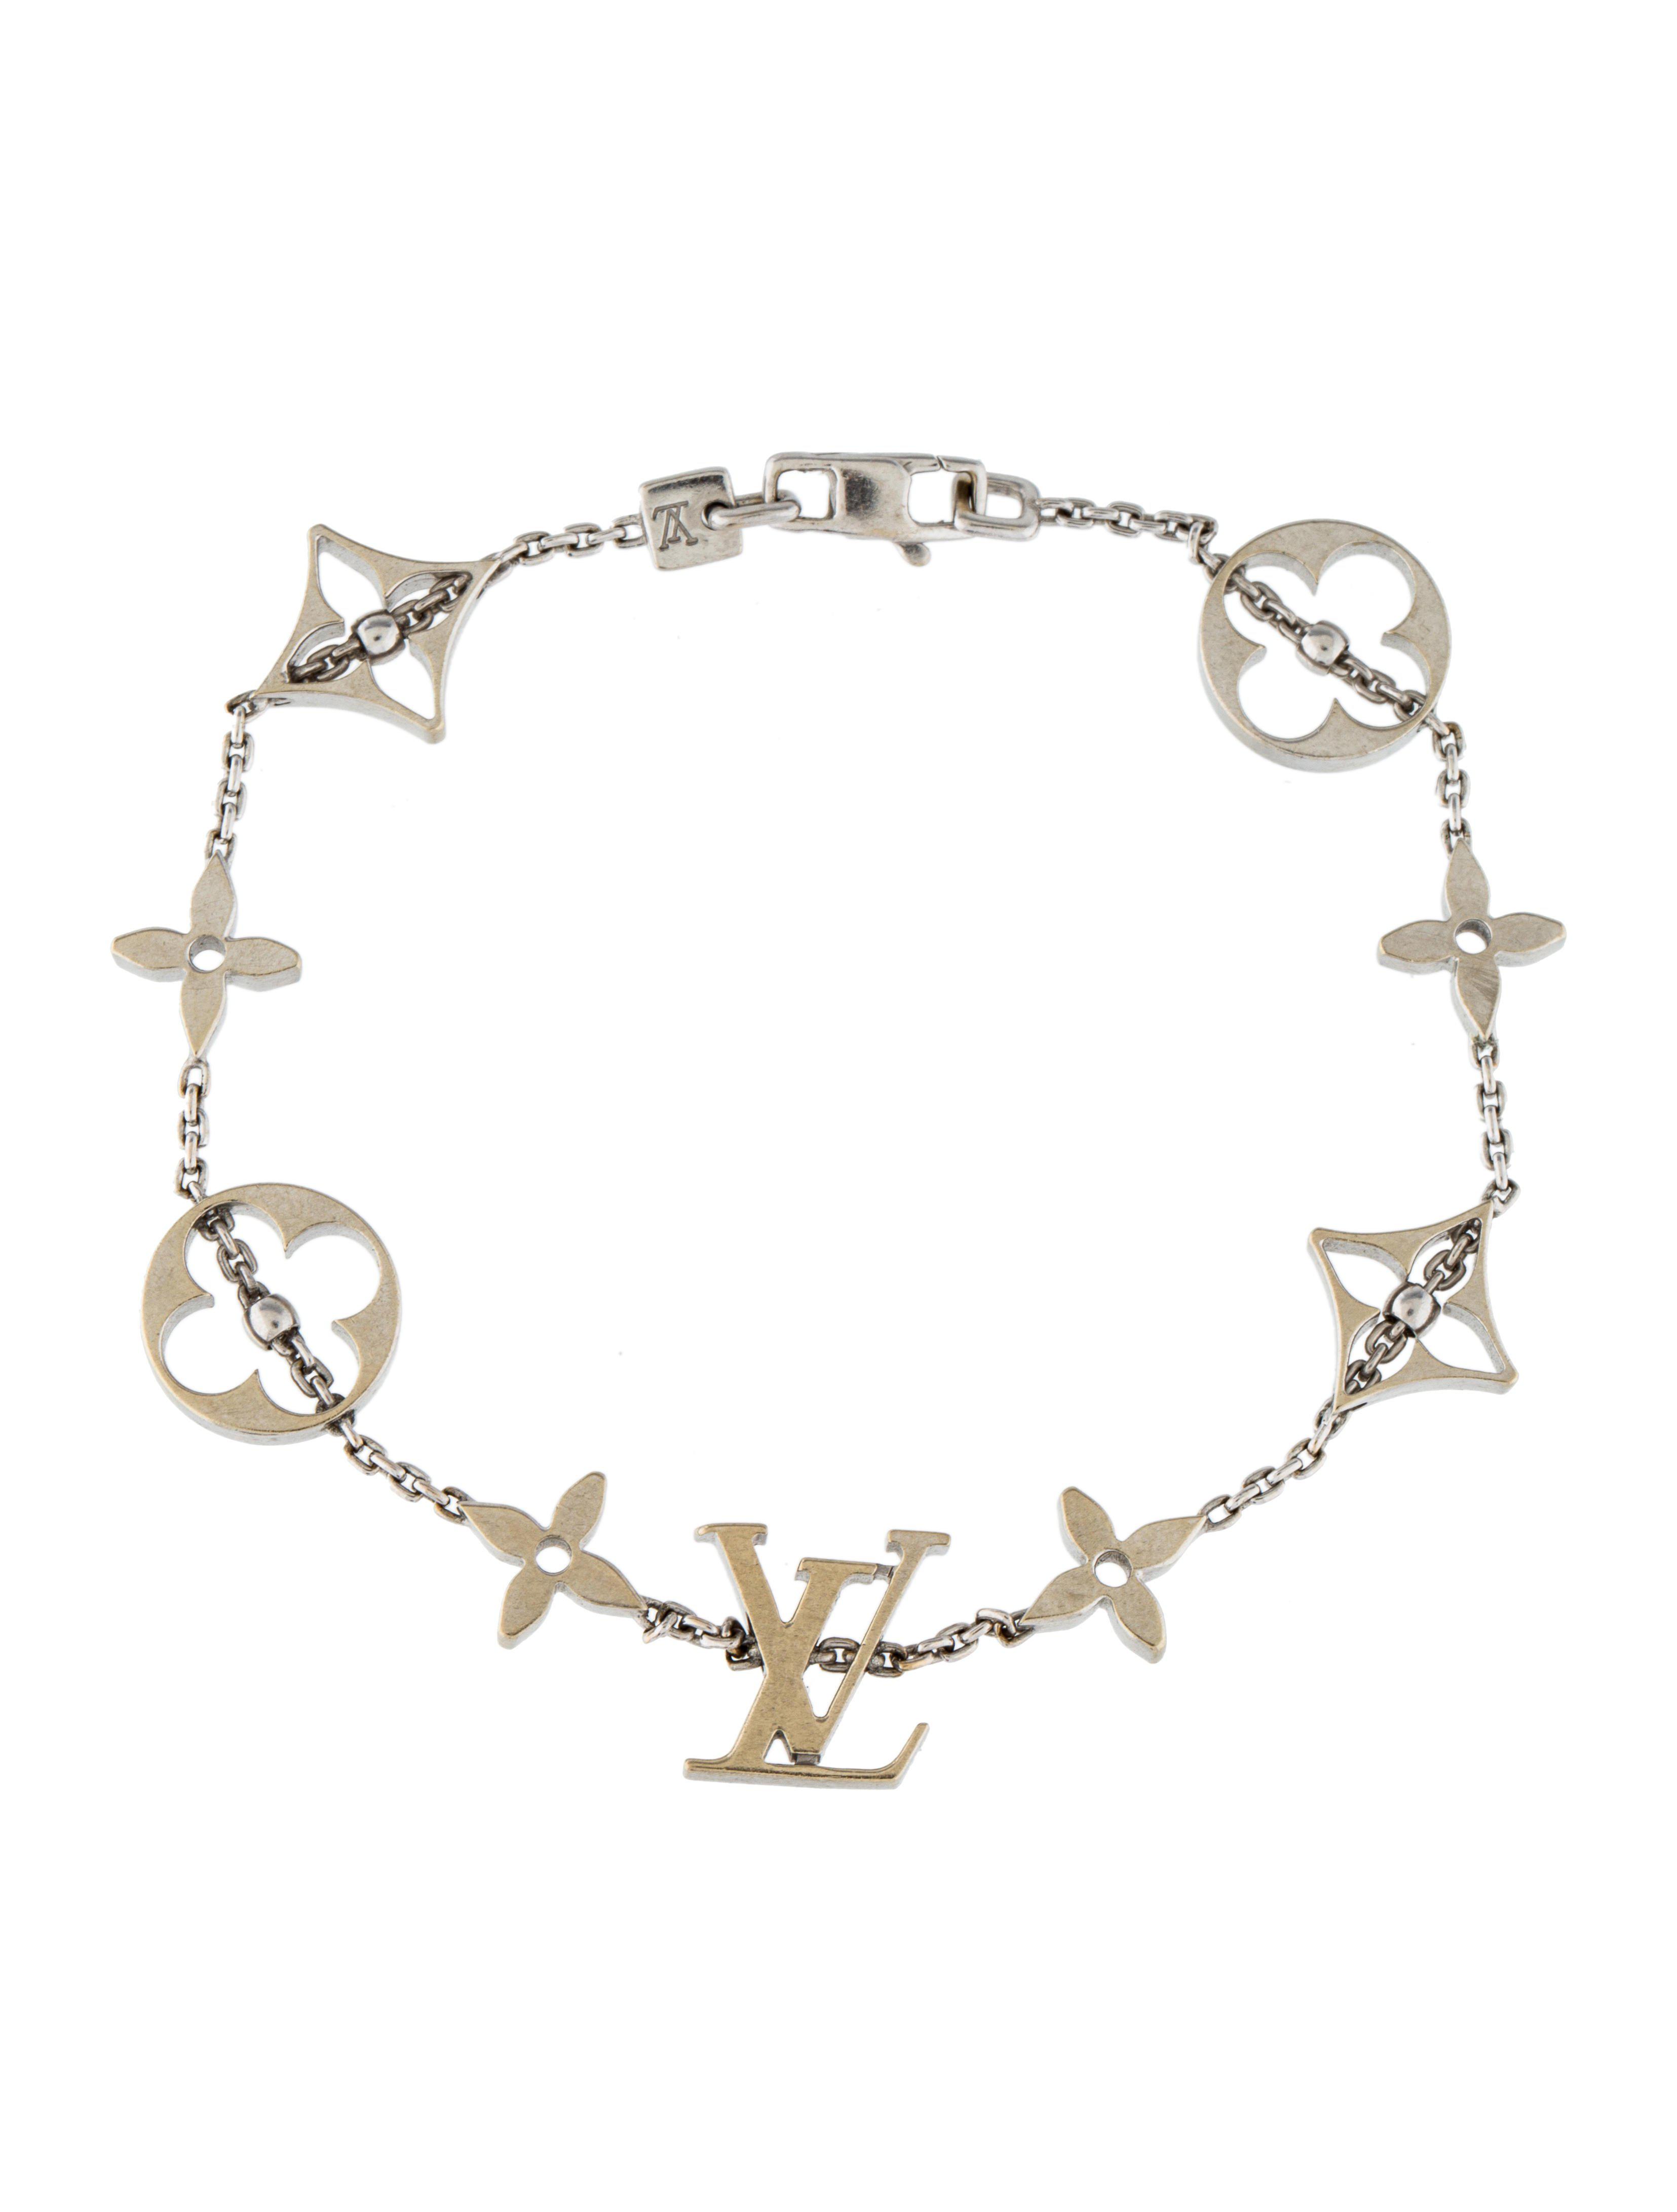 Louis Vuitton Monogram Bracelet White Gold 54905